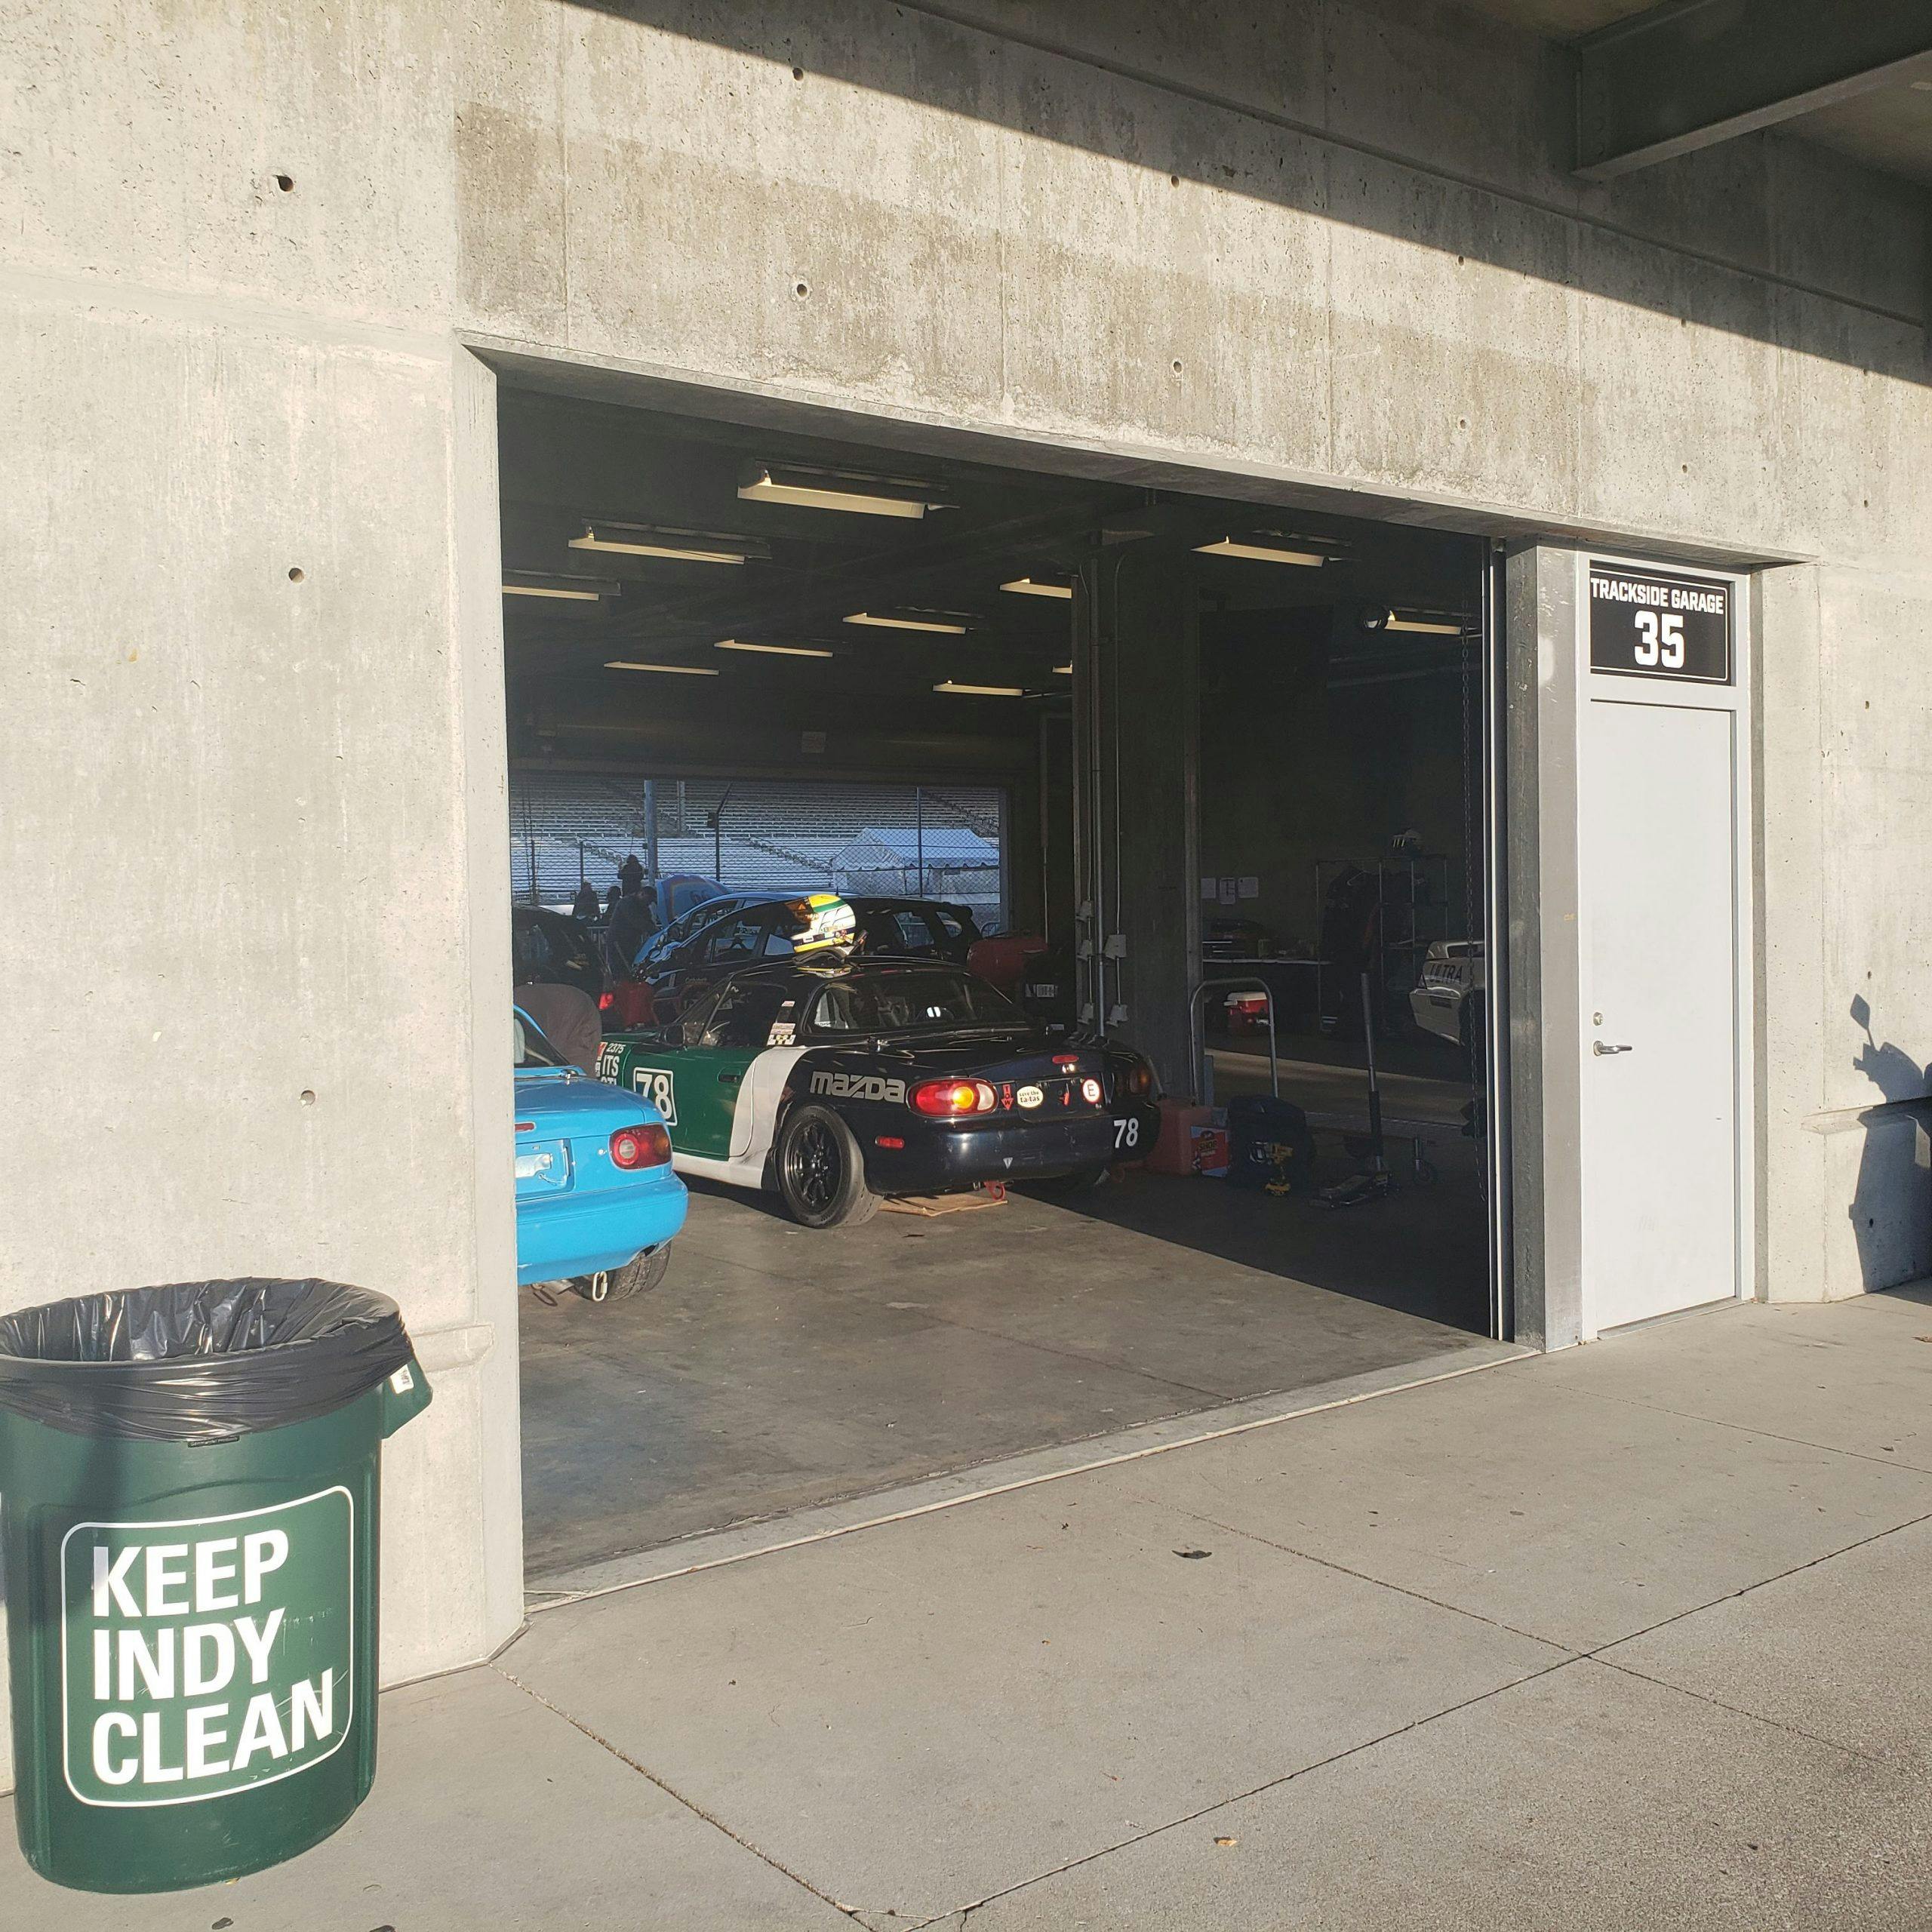 SCCA Runoffs miata garage